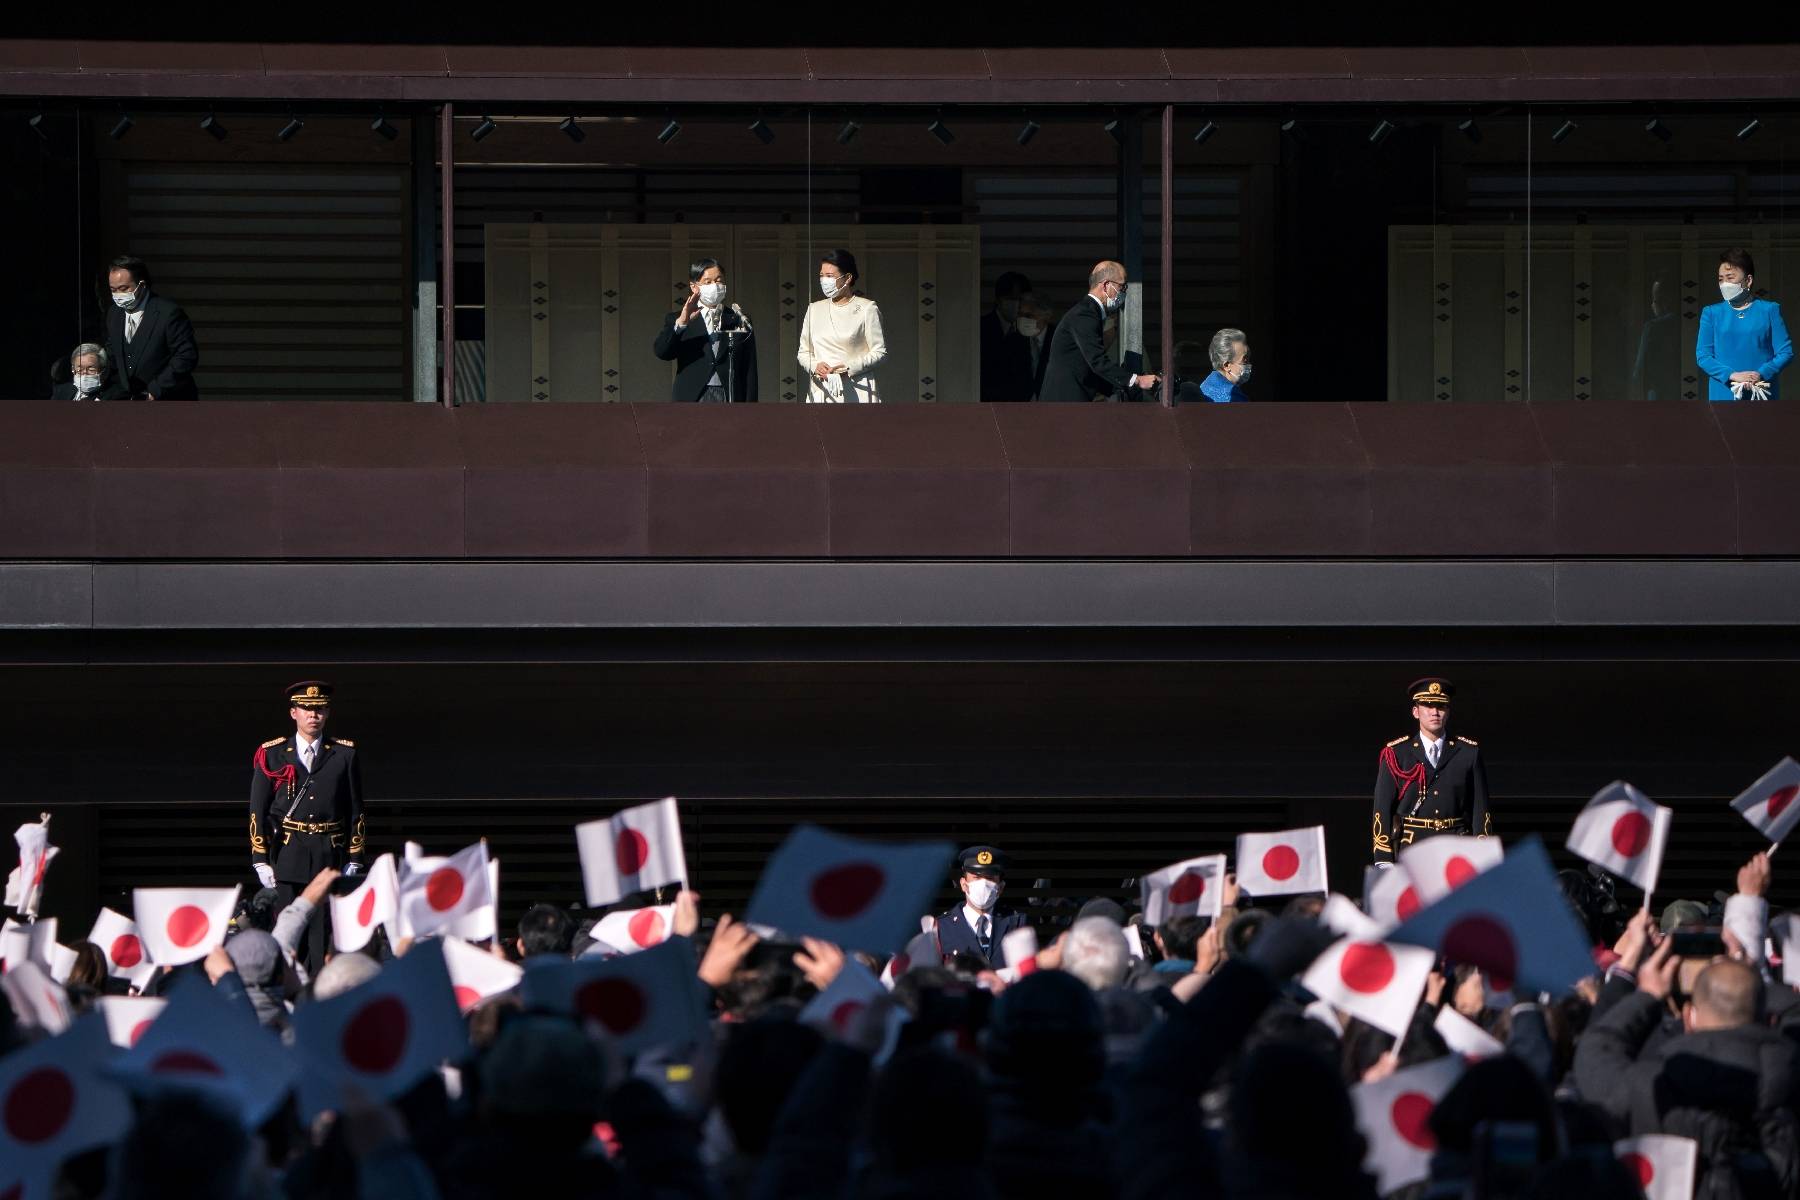 L'empereur du Japon présente ses voeux en public pour la première fois depuis 2020